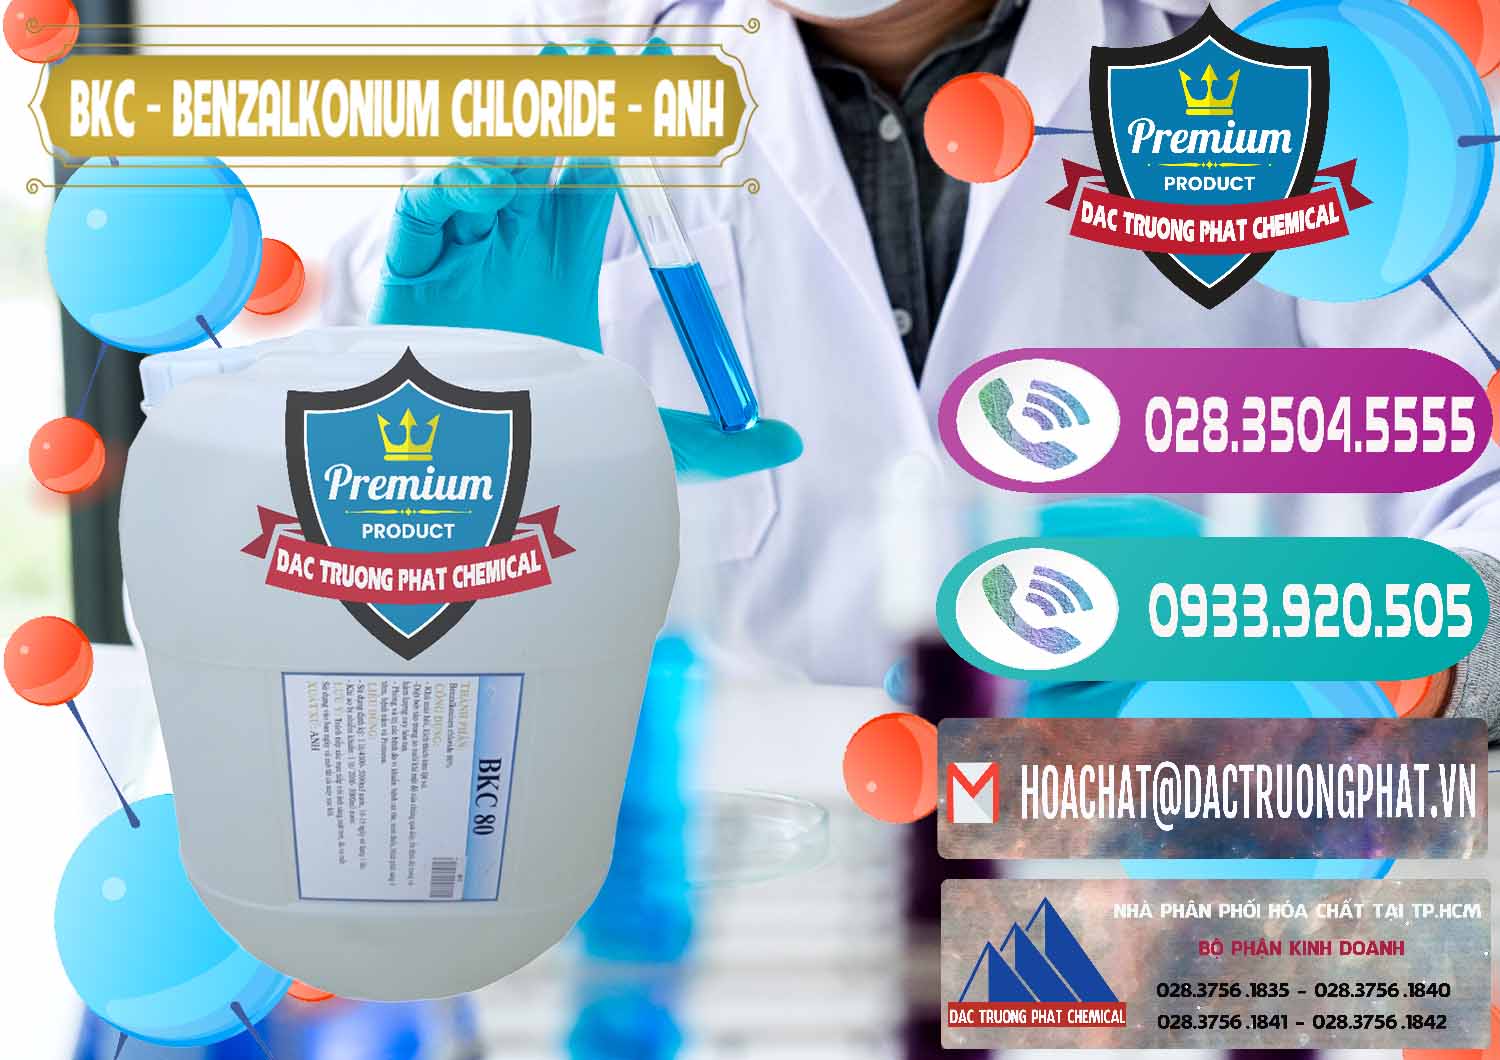 Đơn vị chuyên phân phối - bán BKC - Benzalkonium Chloride Anh Quốc Uk Kingdoms - 0415 - Đơn vị cung cấp _ phân phối hóa chất tại TP.HCM - hoachatxulynuoc.com